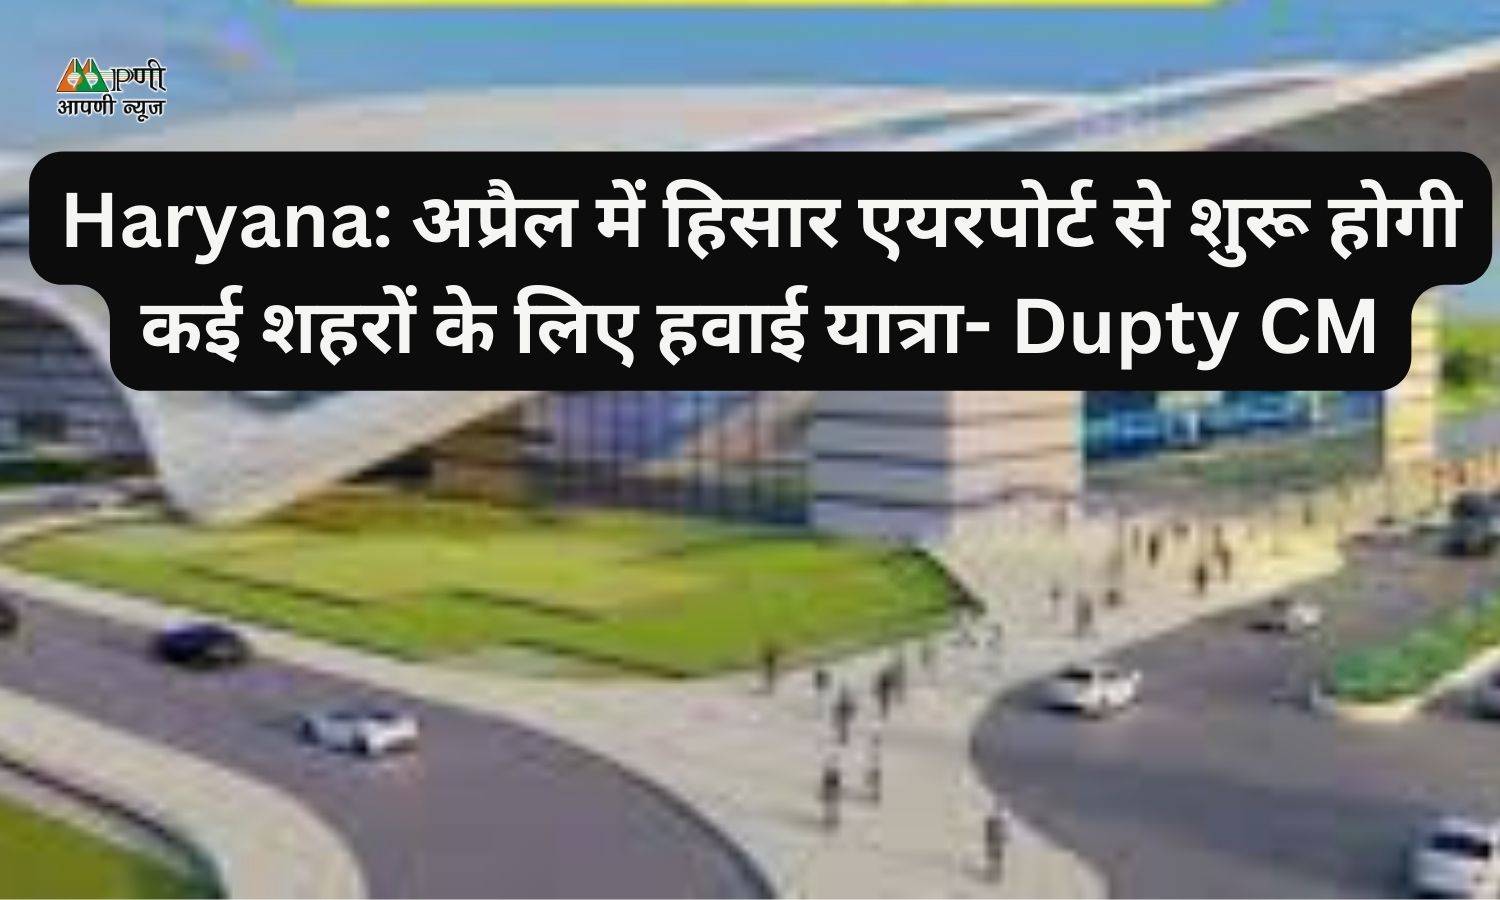 Haryana: अप्रैल में हिसार एयरपोर्ट से शुरू होगी कई शहरों के लिए हवाई यात्रा- Dupty CM